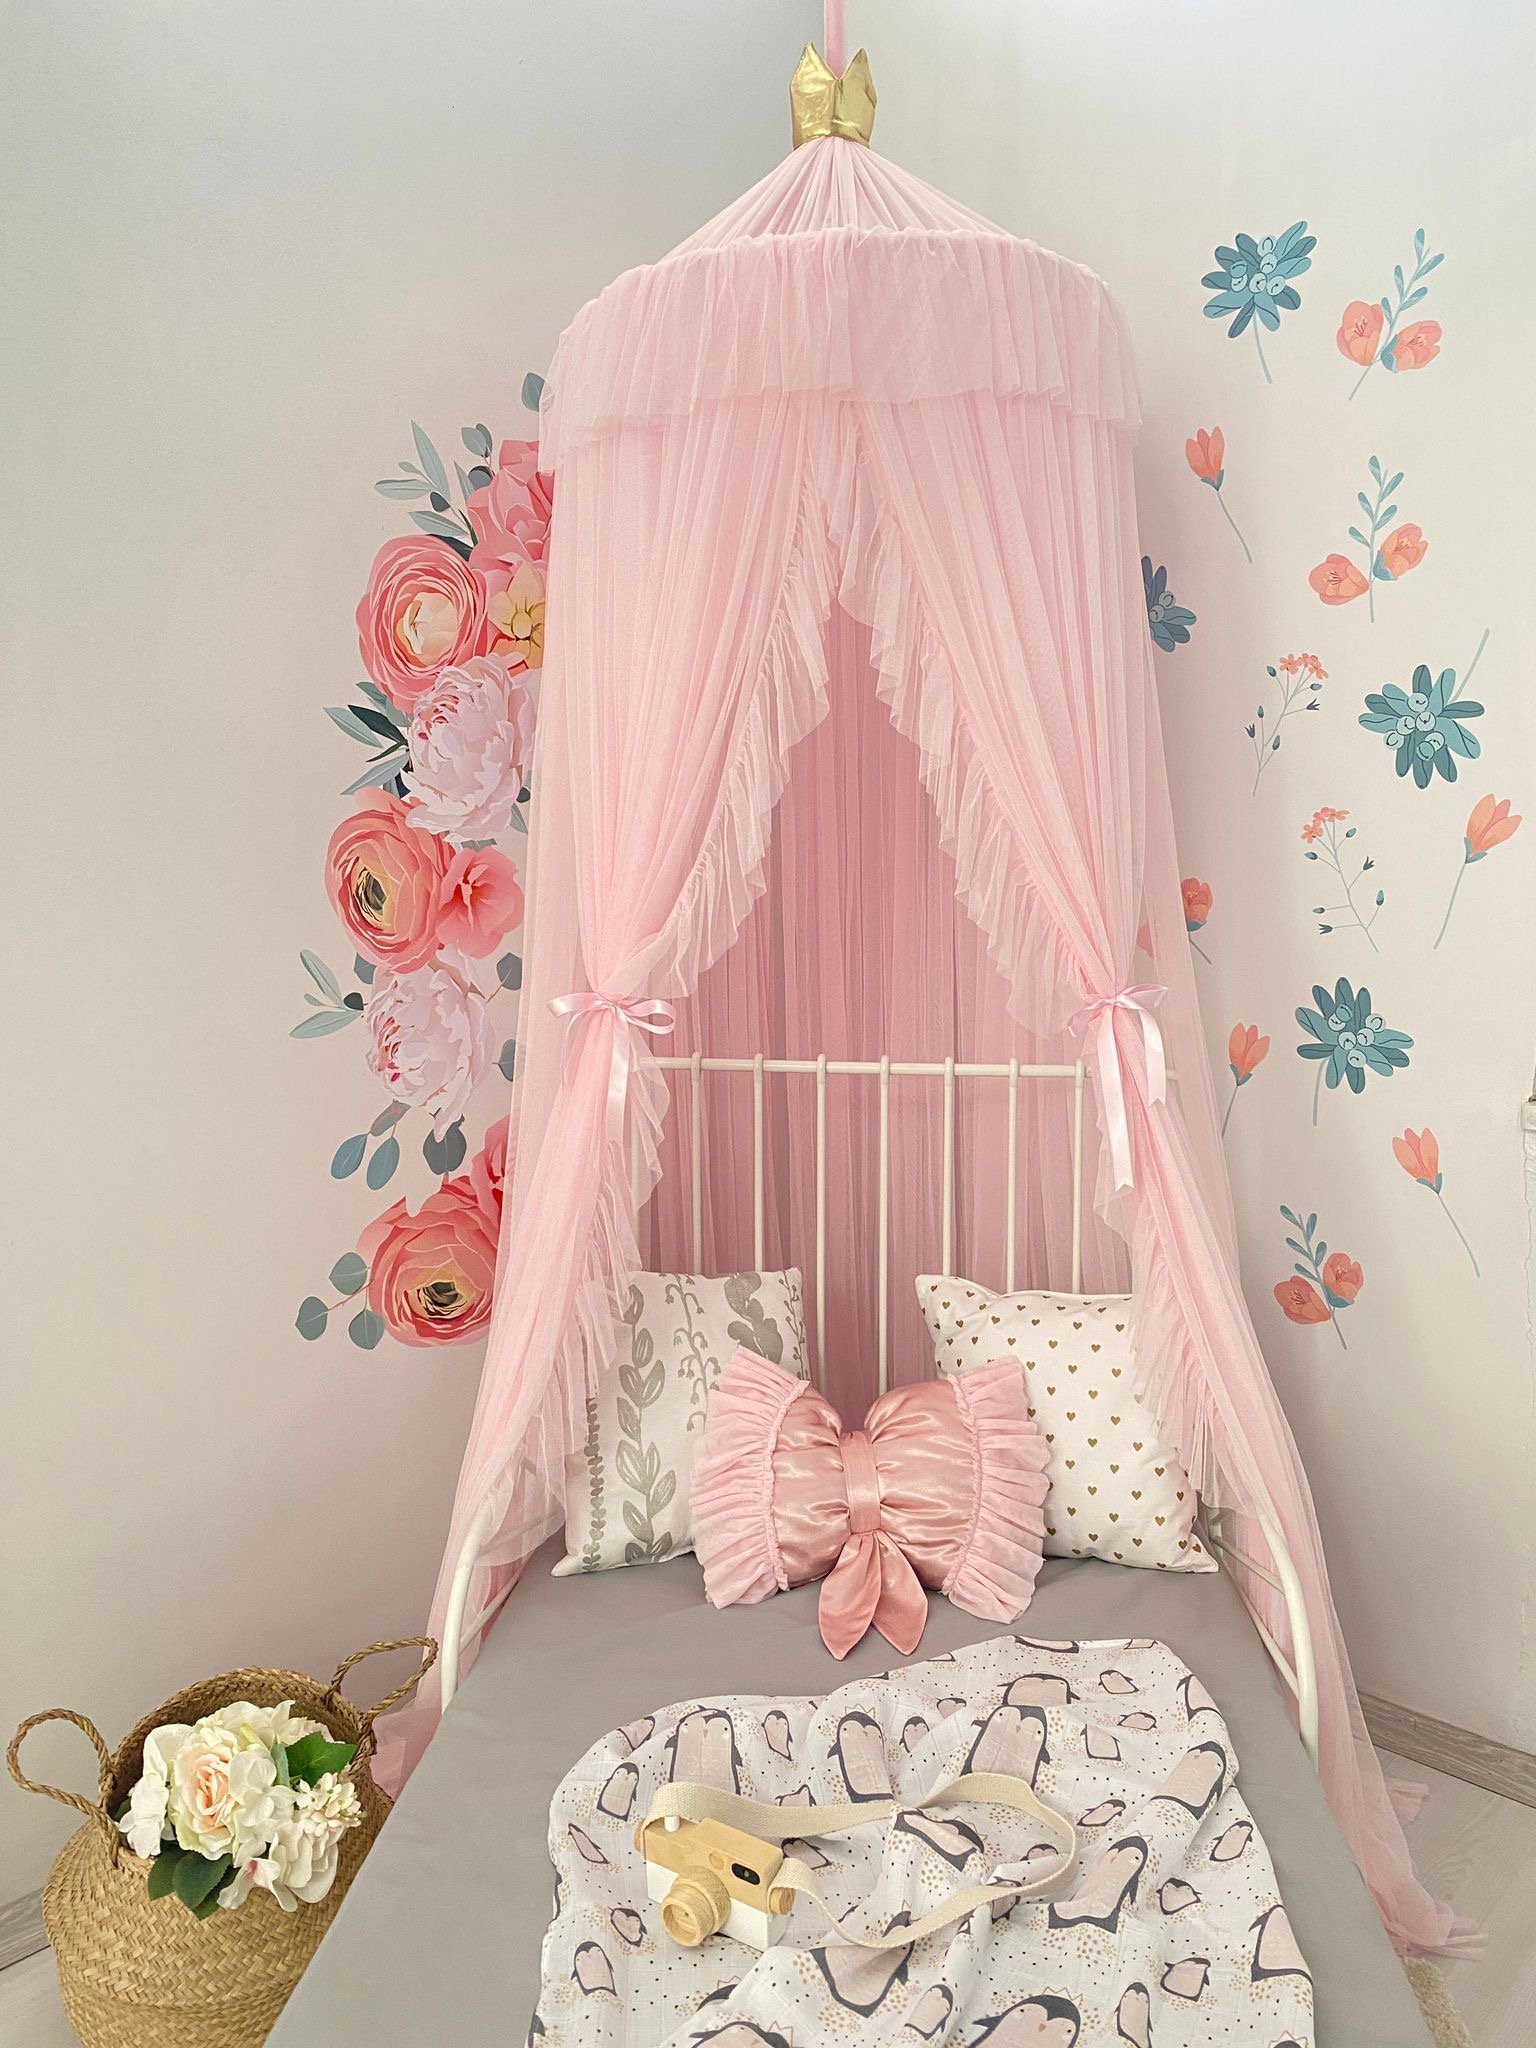 Baby Fancyroom Betthimmel Baldachin 25M Betthimmel Kinderzimmer Babyzimmer Moskitonetz (Hausbett, Kinderbetthimmel, fließendes Material, passend auch zur Leseecke zum Entspannen), luftdurchlässig, hochwertig rosa